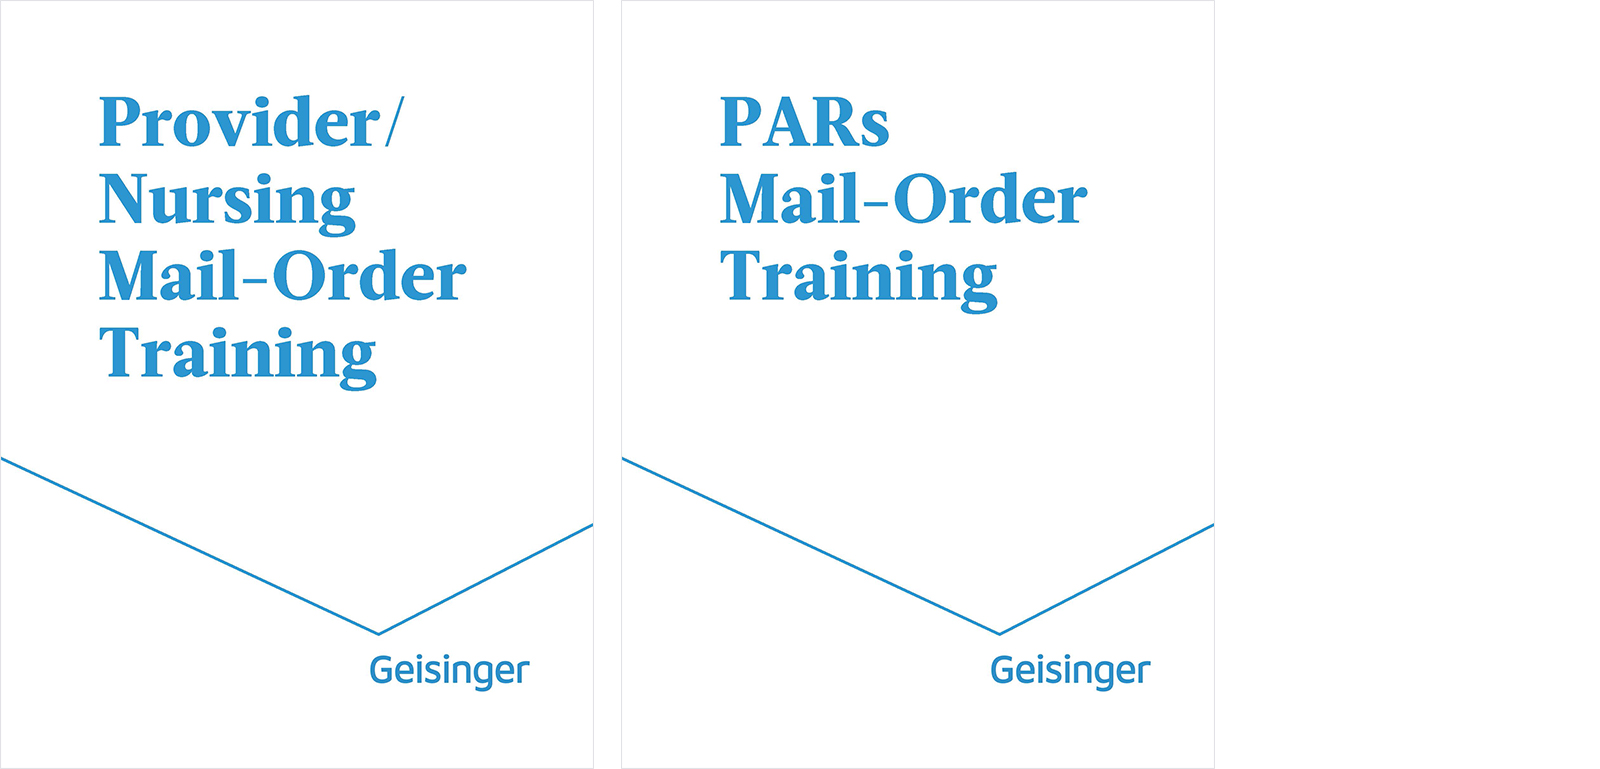 Geisinger Mail-Order Pharmacy training kits